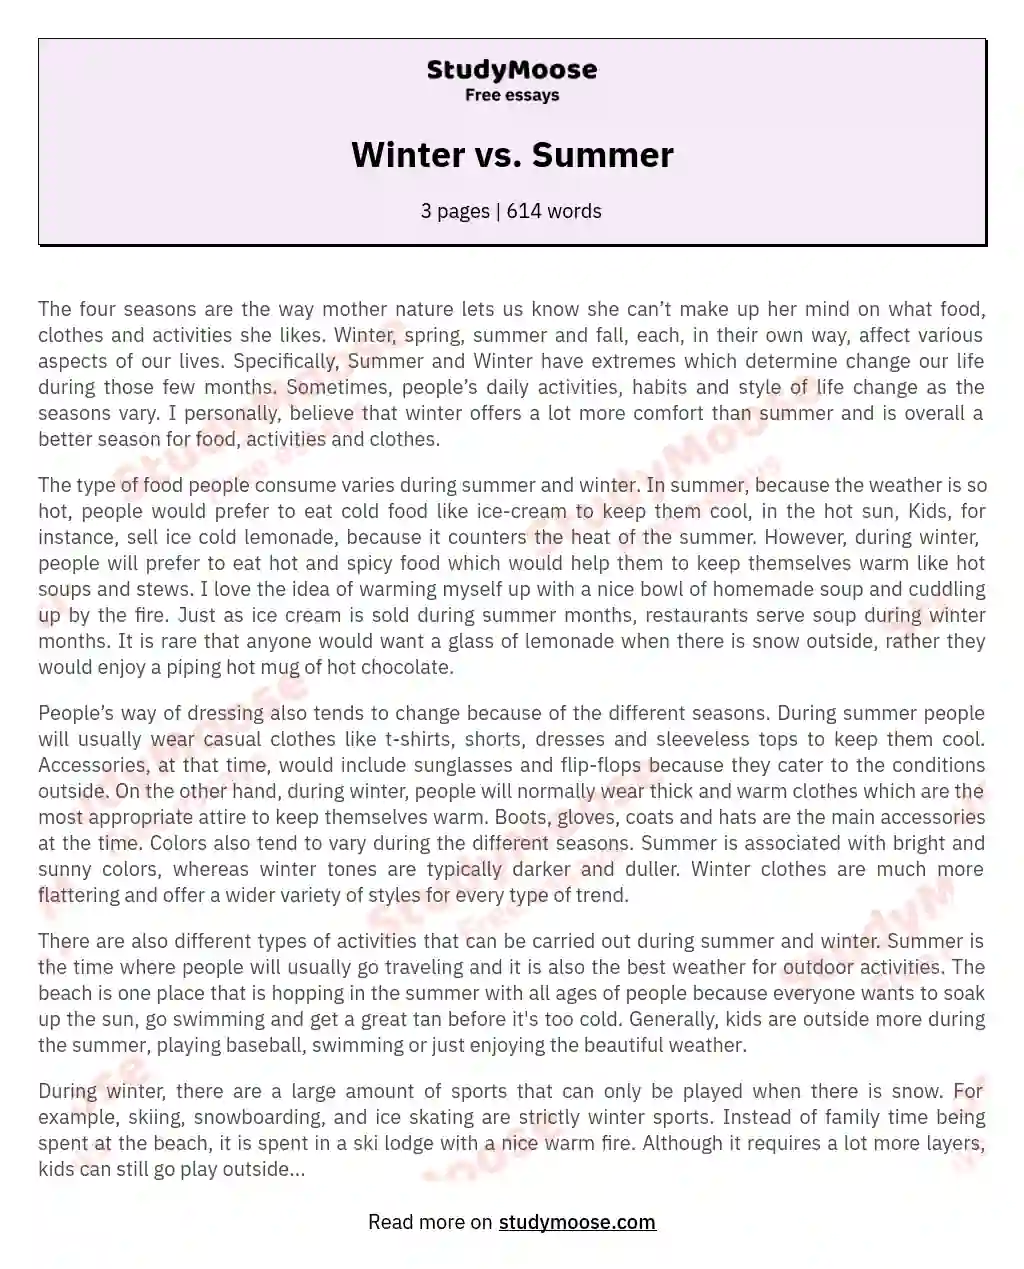 Winter vs. Summer essay